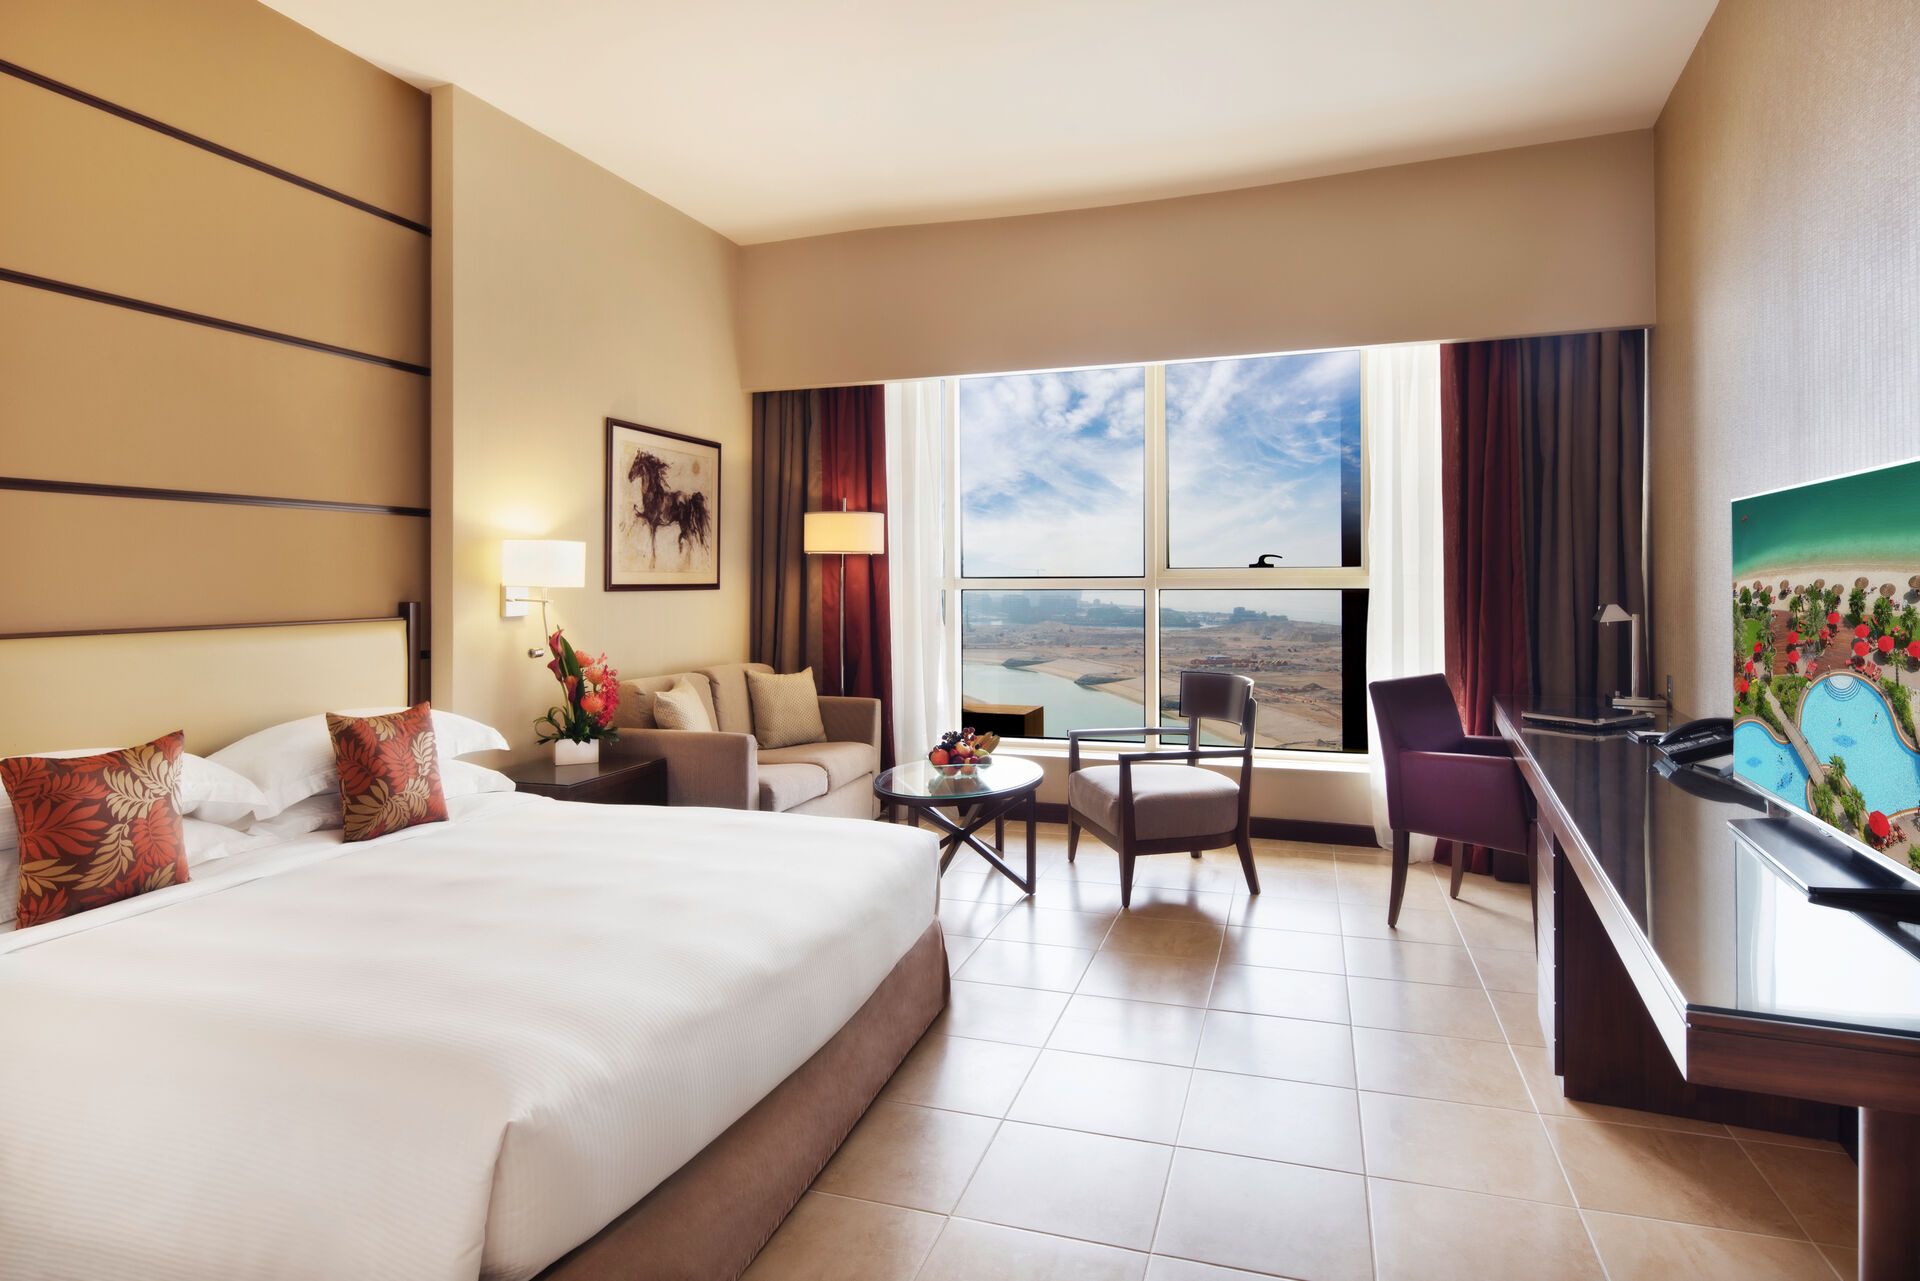 Emirats Arabes Unis - Abu Dhabi - Hotel Khalidiya Palace Rayhaan 5*